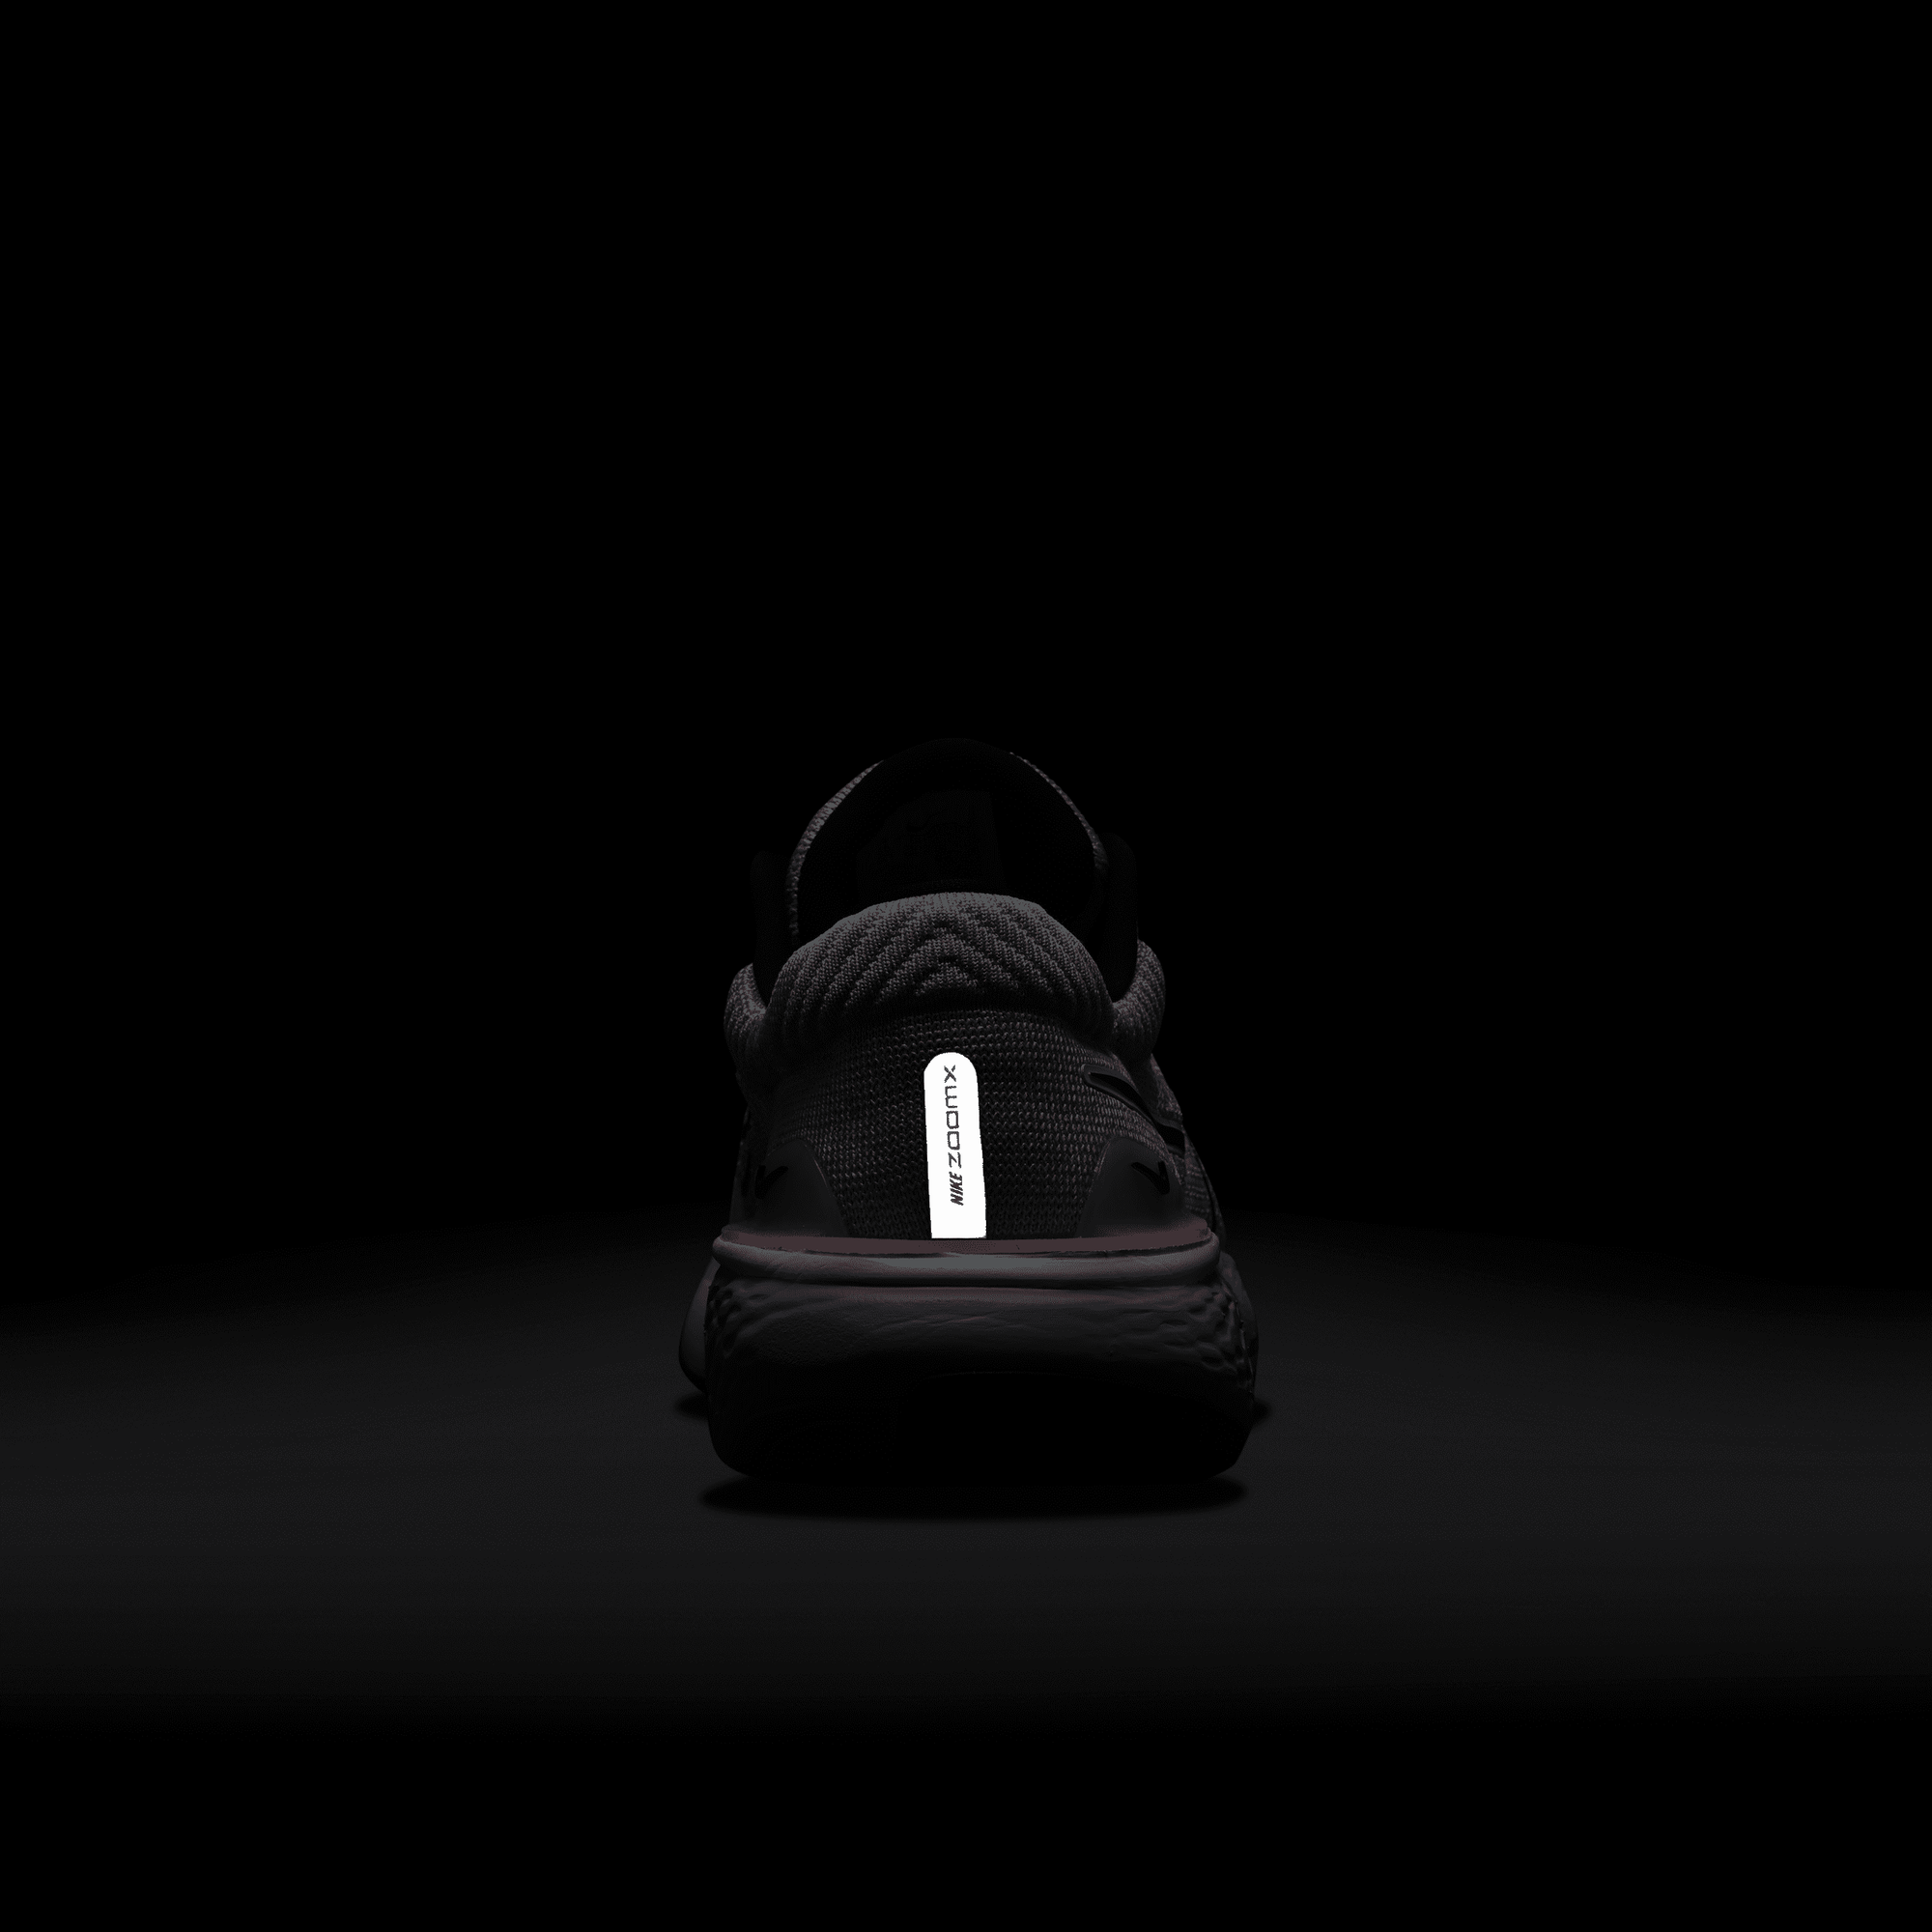 tinción Tío o señor partícula ZoomX Invincible Run Flyknit 2Men's Road Running Shoes in KSA. Nike SA